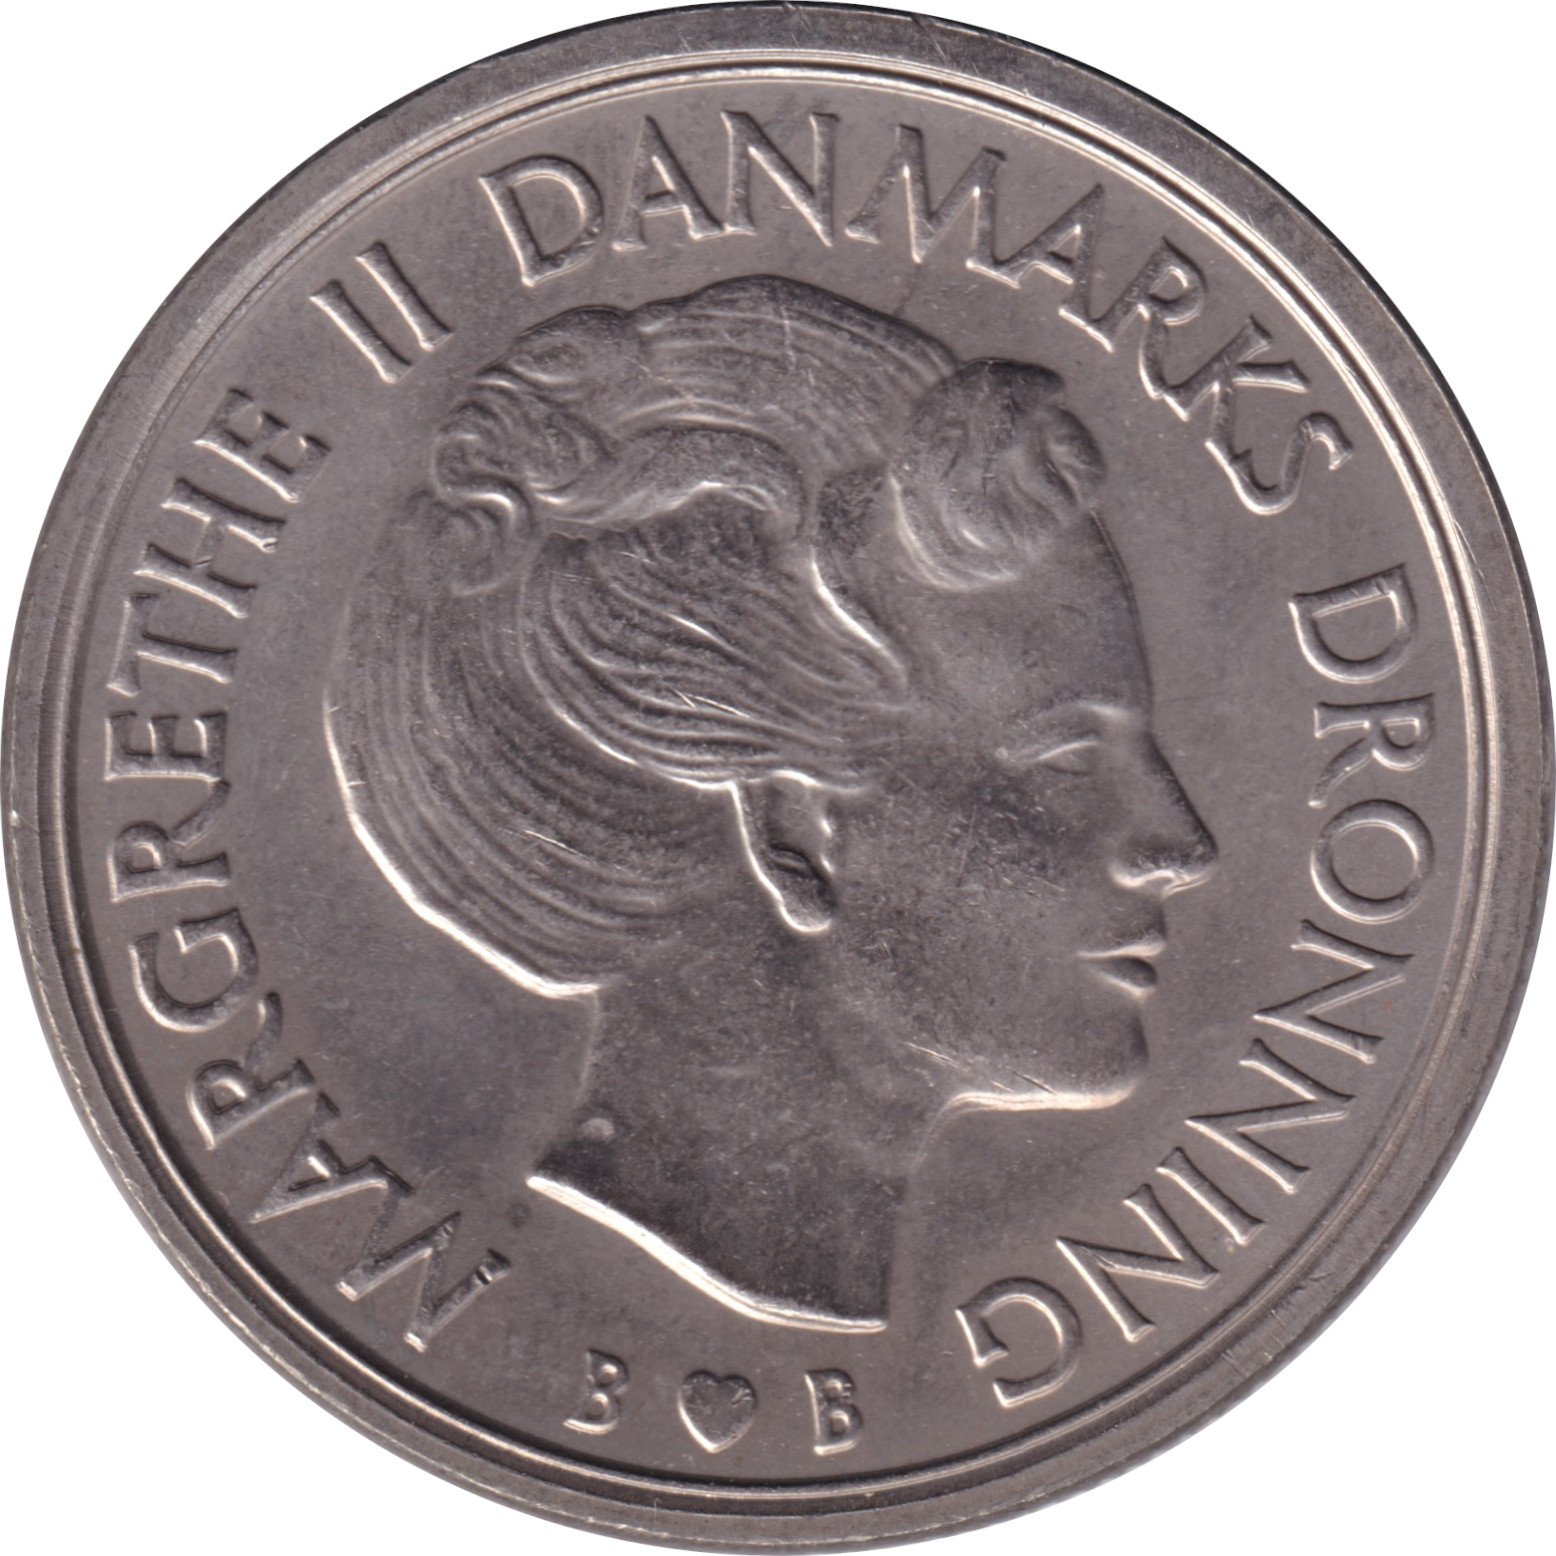 5 kroner - Margrethe II - Blason